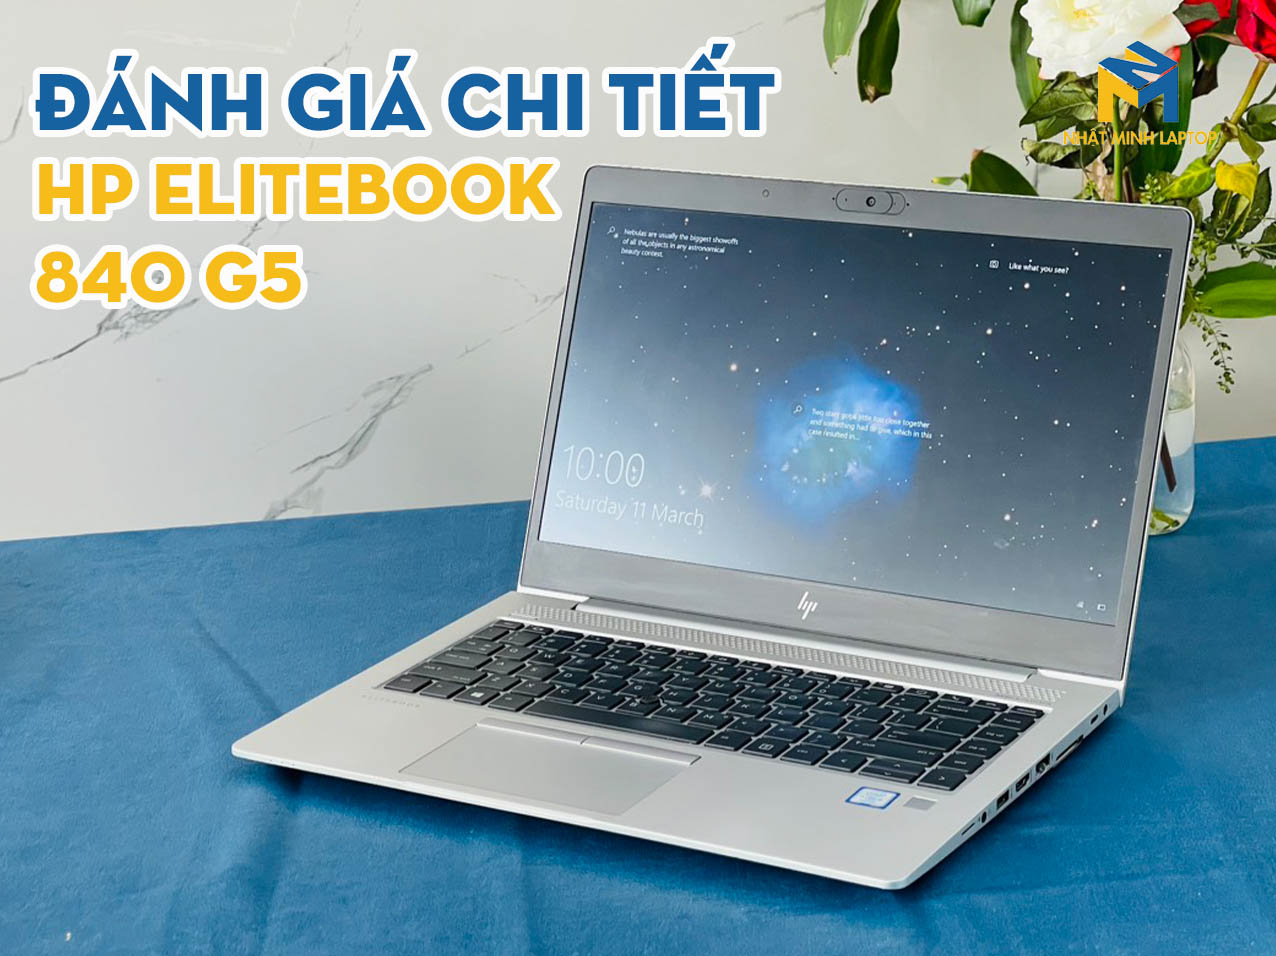 Đánh giá chi tiết Laptop HP Elitebook i5 840 G5 qua 4 tiêu chí